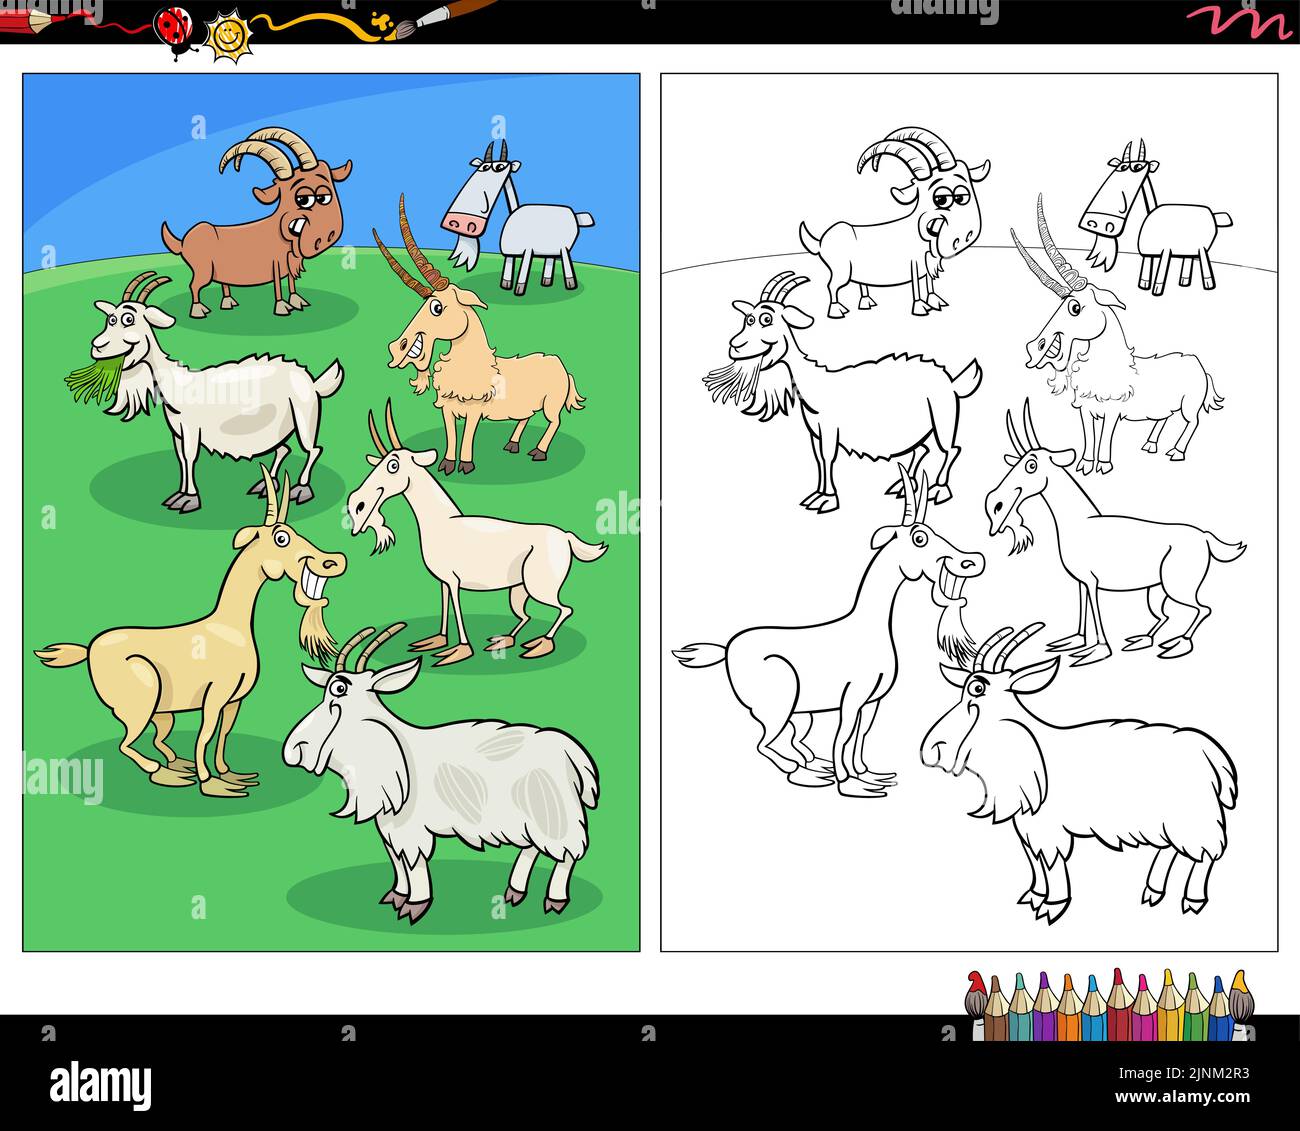 Illustration de dessins animés des personnages animaux de ferme de chèvres dans la page de coloriage de prairie Illustration de Vecteur